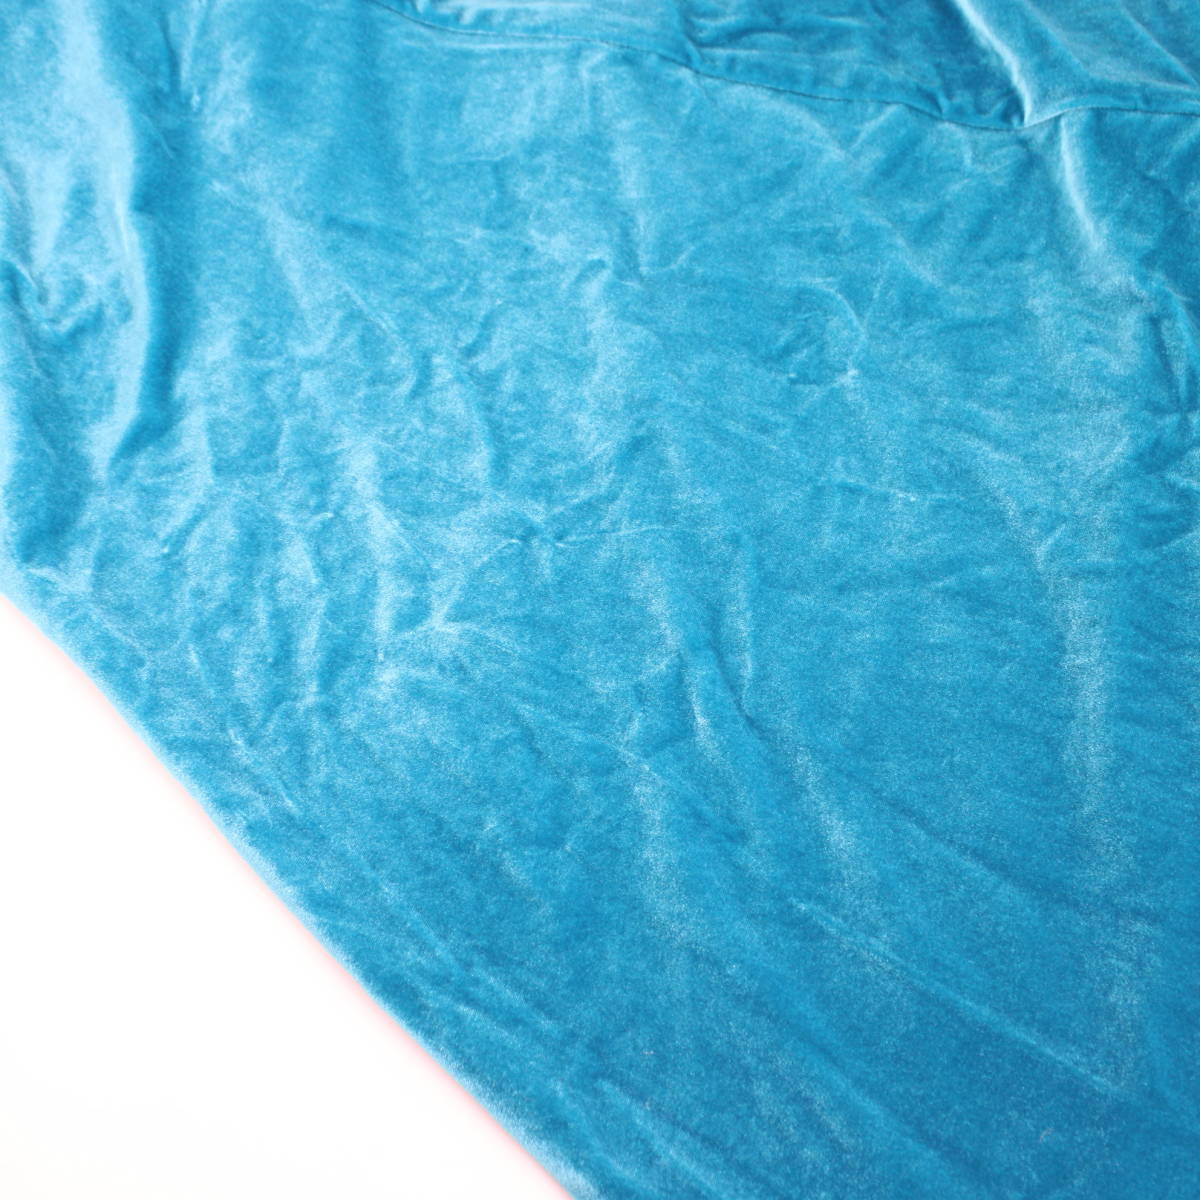 [ бесплатная доставка ][ хула для костюм прекрасный товар Velo адрес ]CCFASHIONS cerulean blue 1-2 размер длинный One-piece Hawaiian глянец с блеском .